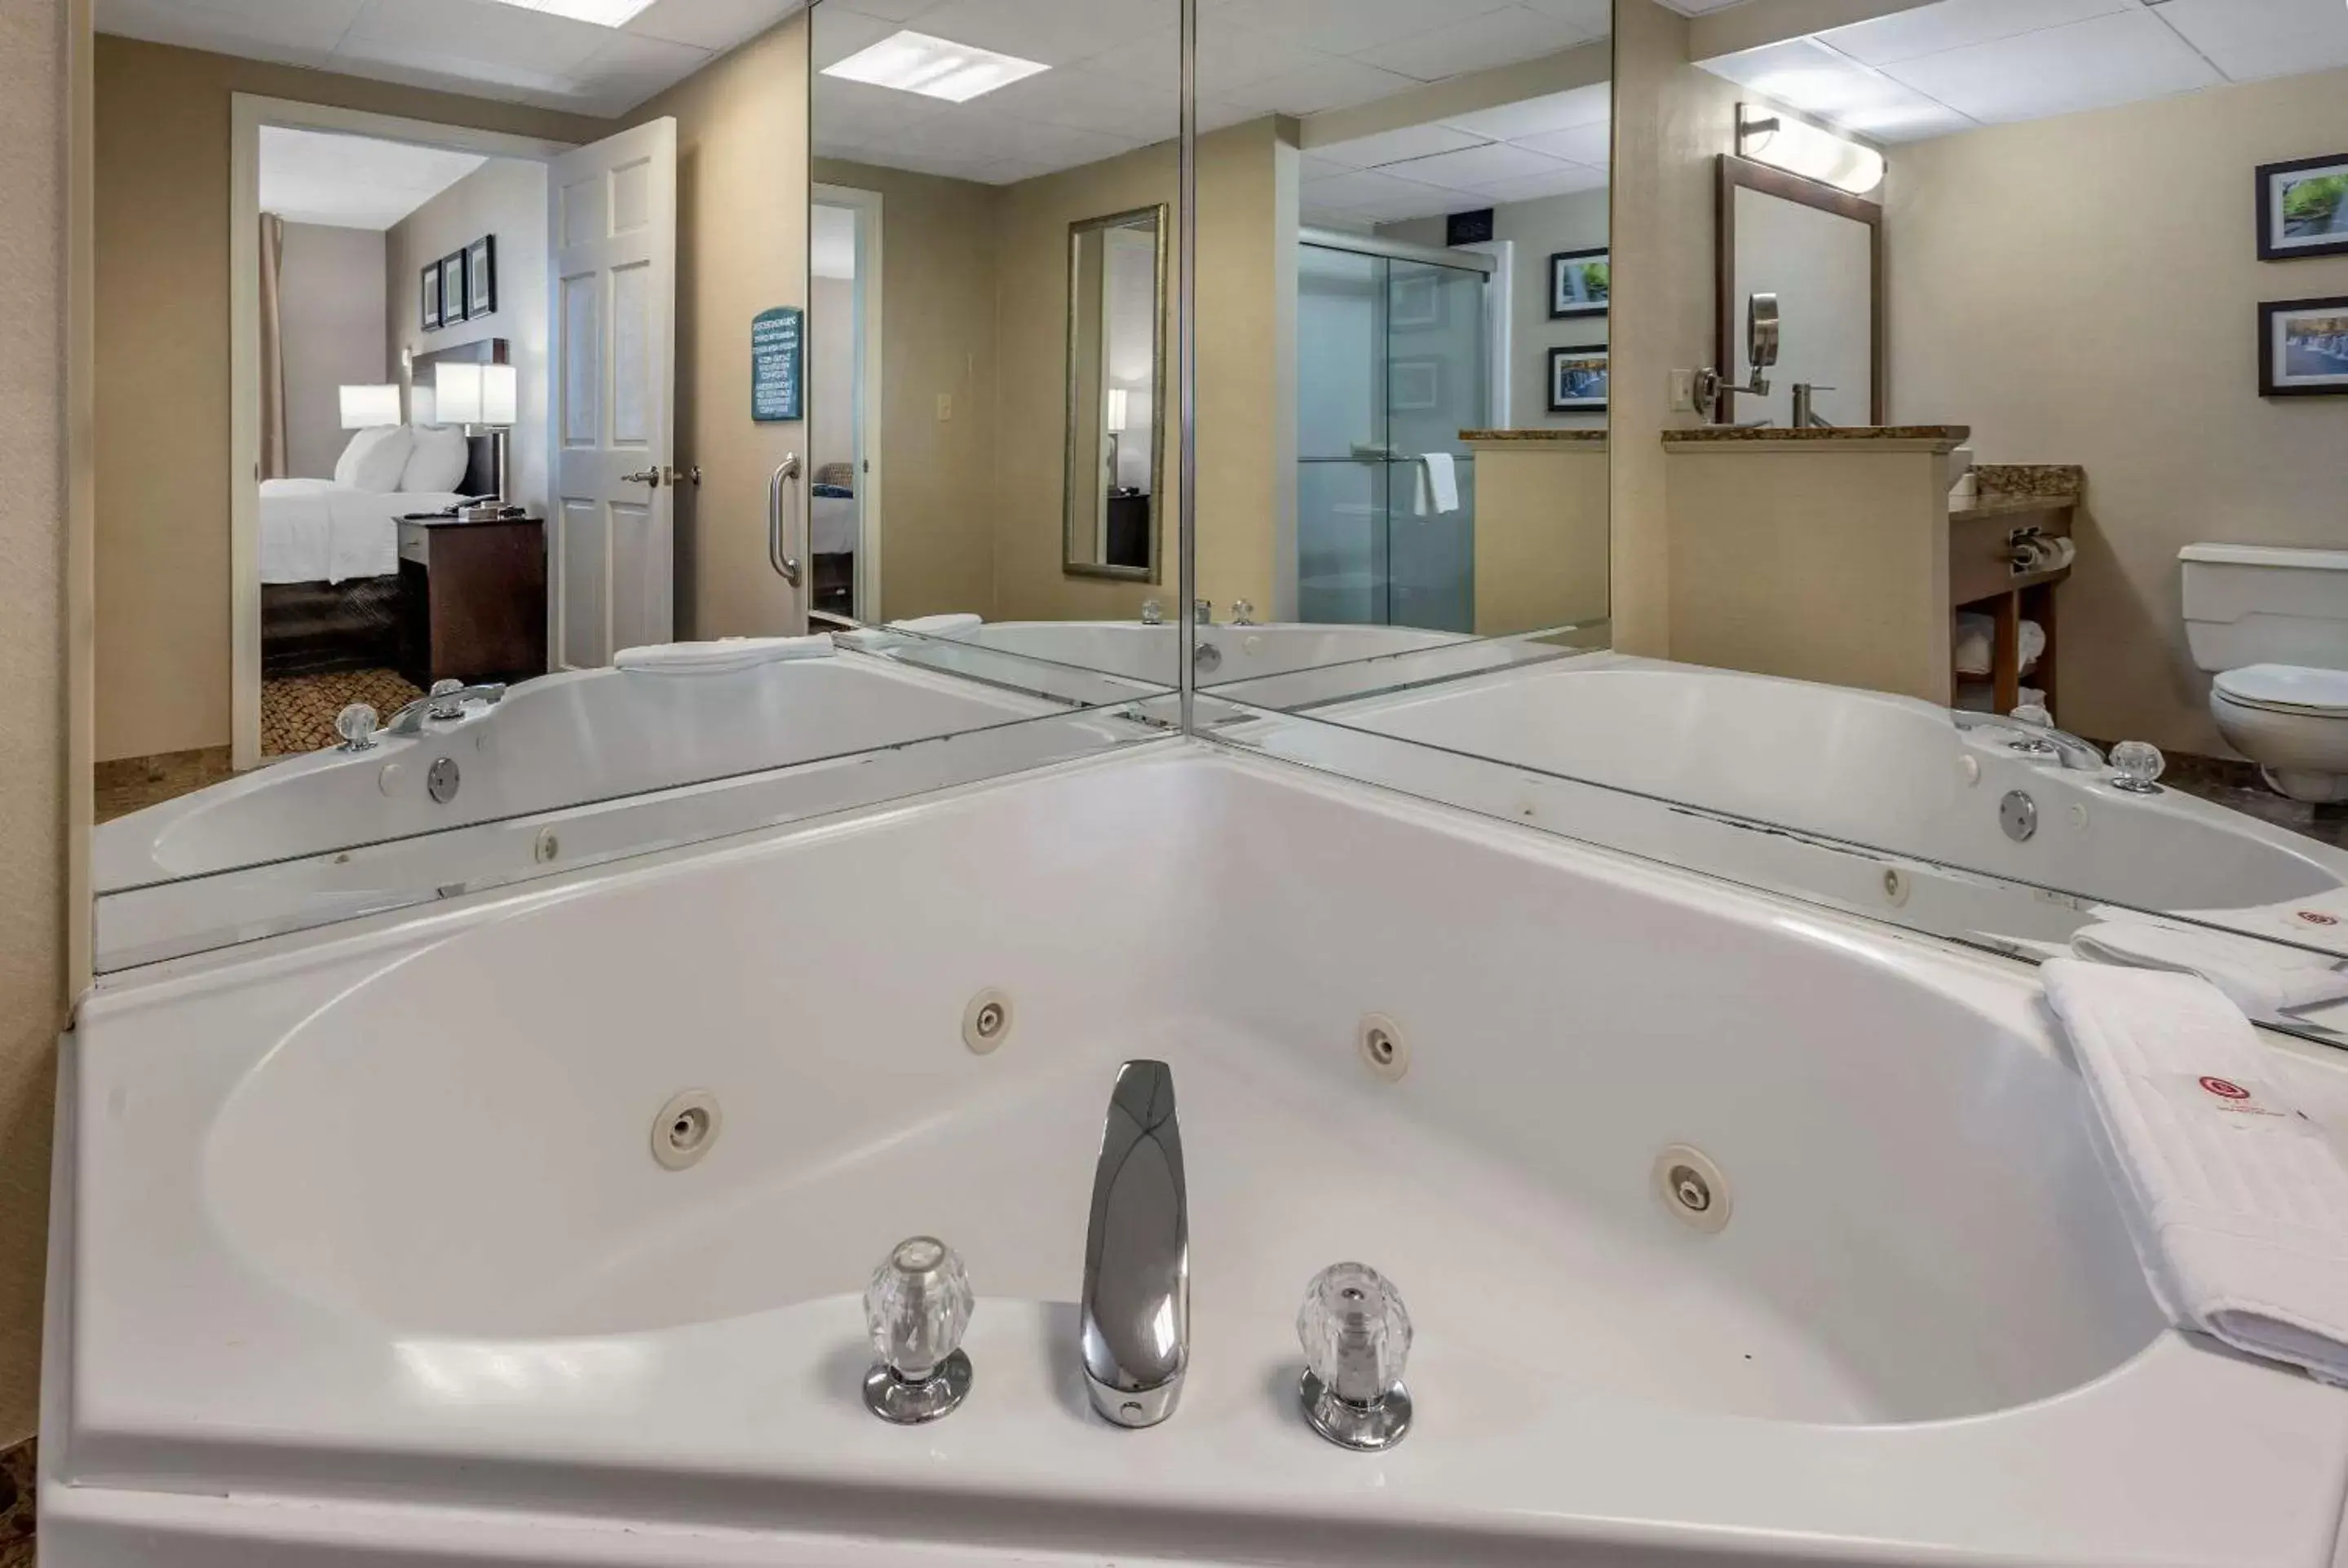 Photo of the whole room, Bathroom in Comfort Inn & Suites Glen Mills - Concordville